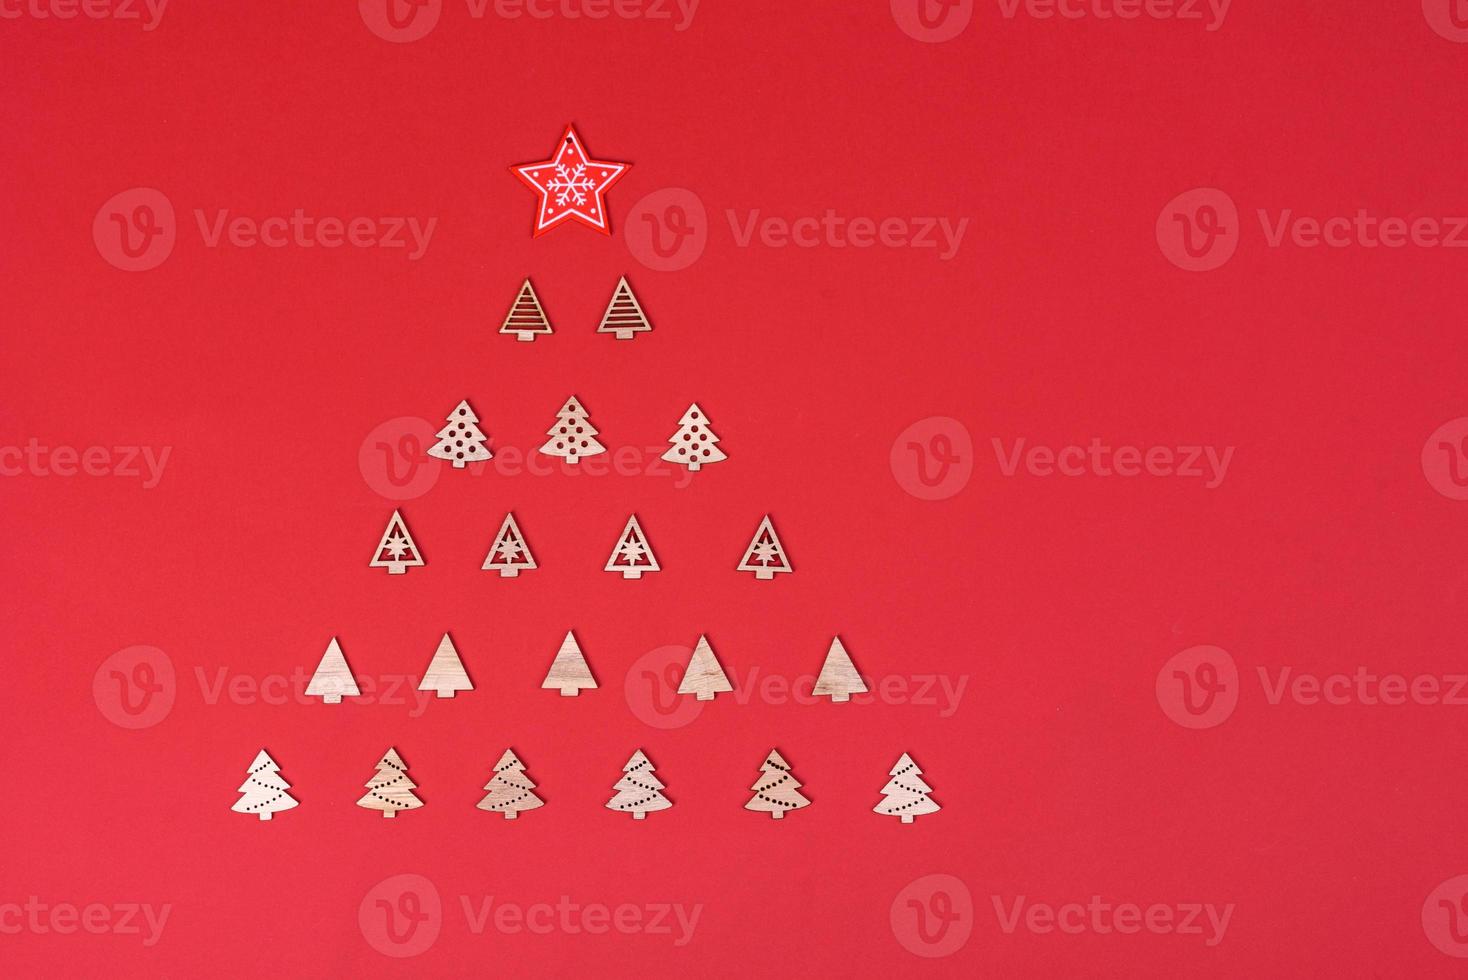 elementos vermelhos e brancos que são usados para decorar a árvore de natal foto